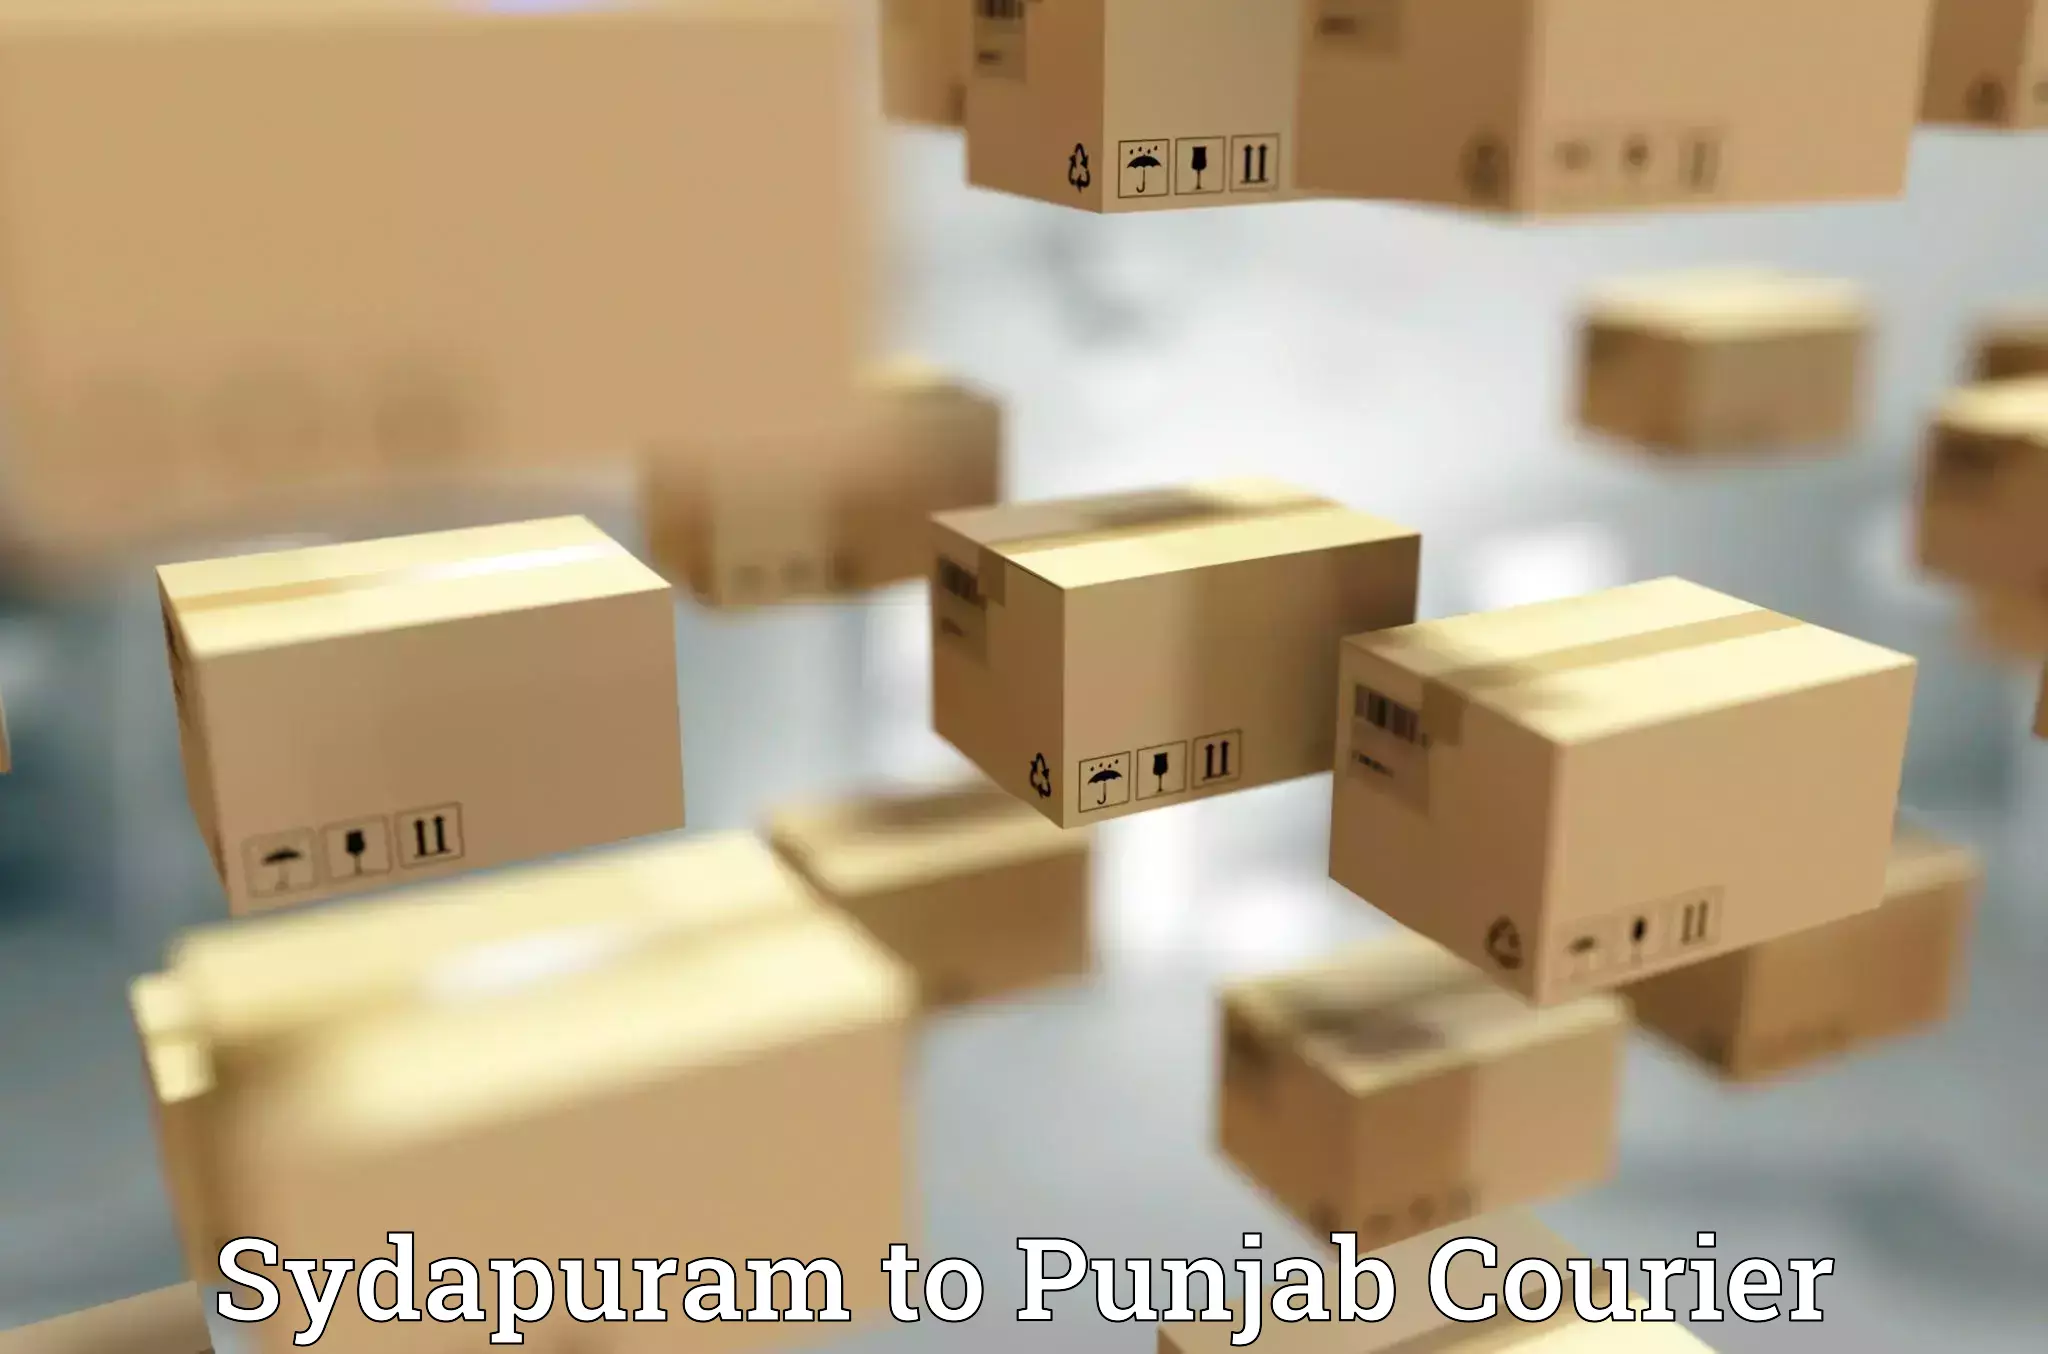 Luggage delivery estimate Sydapuram to Punjab